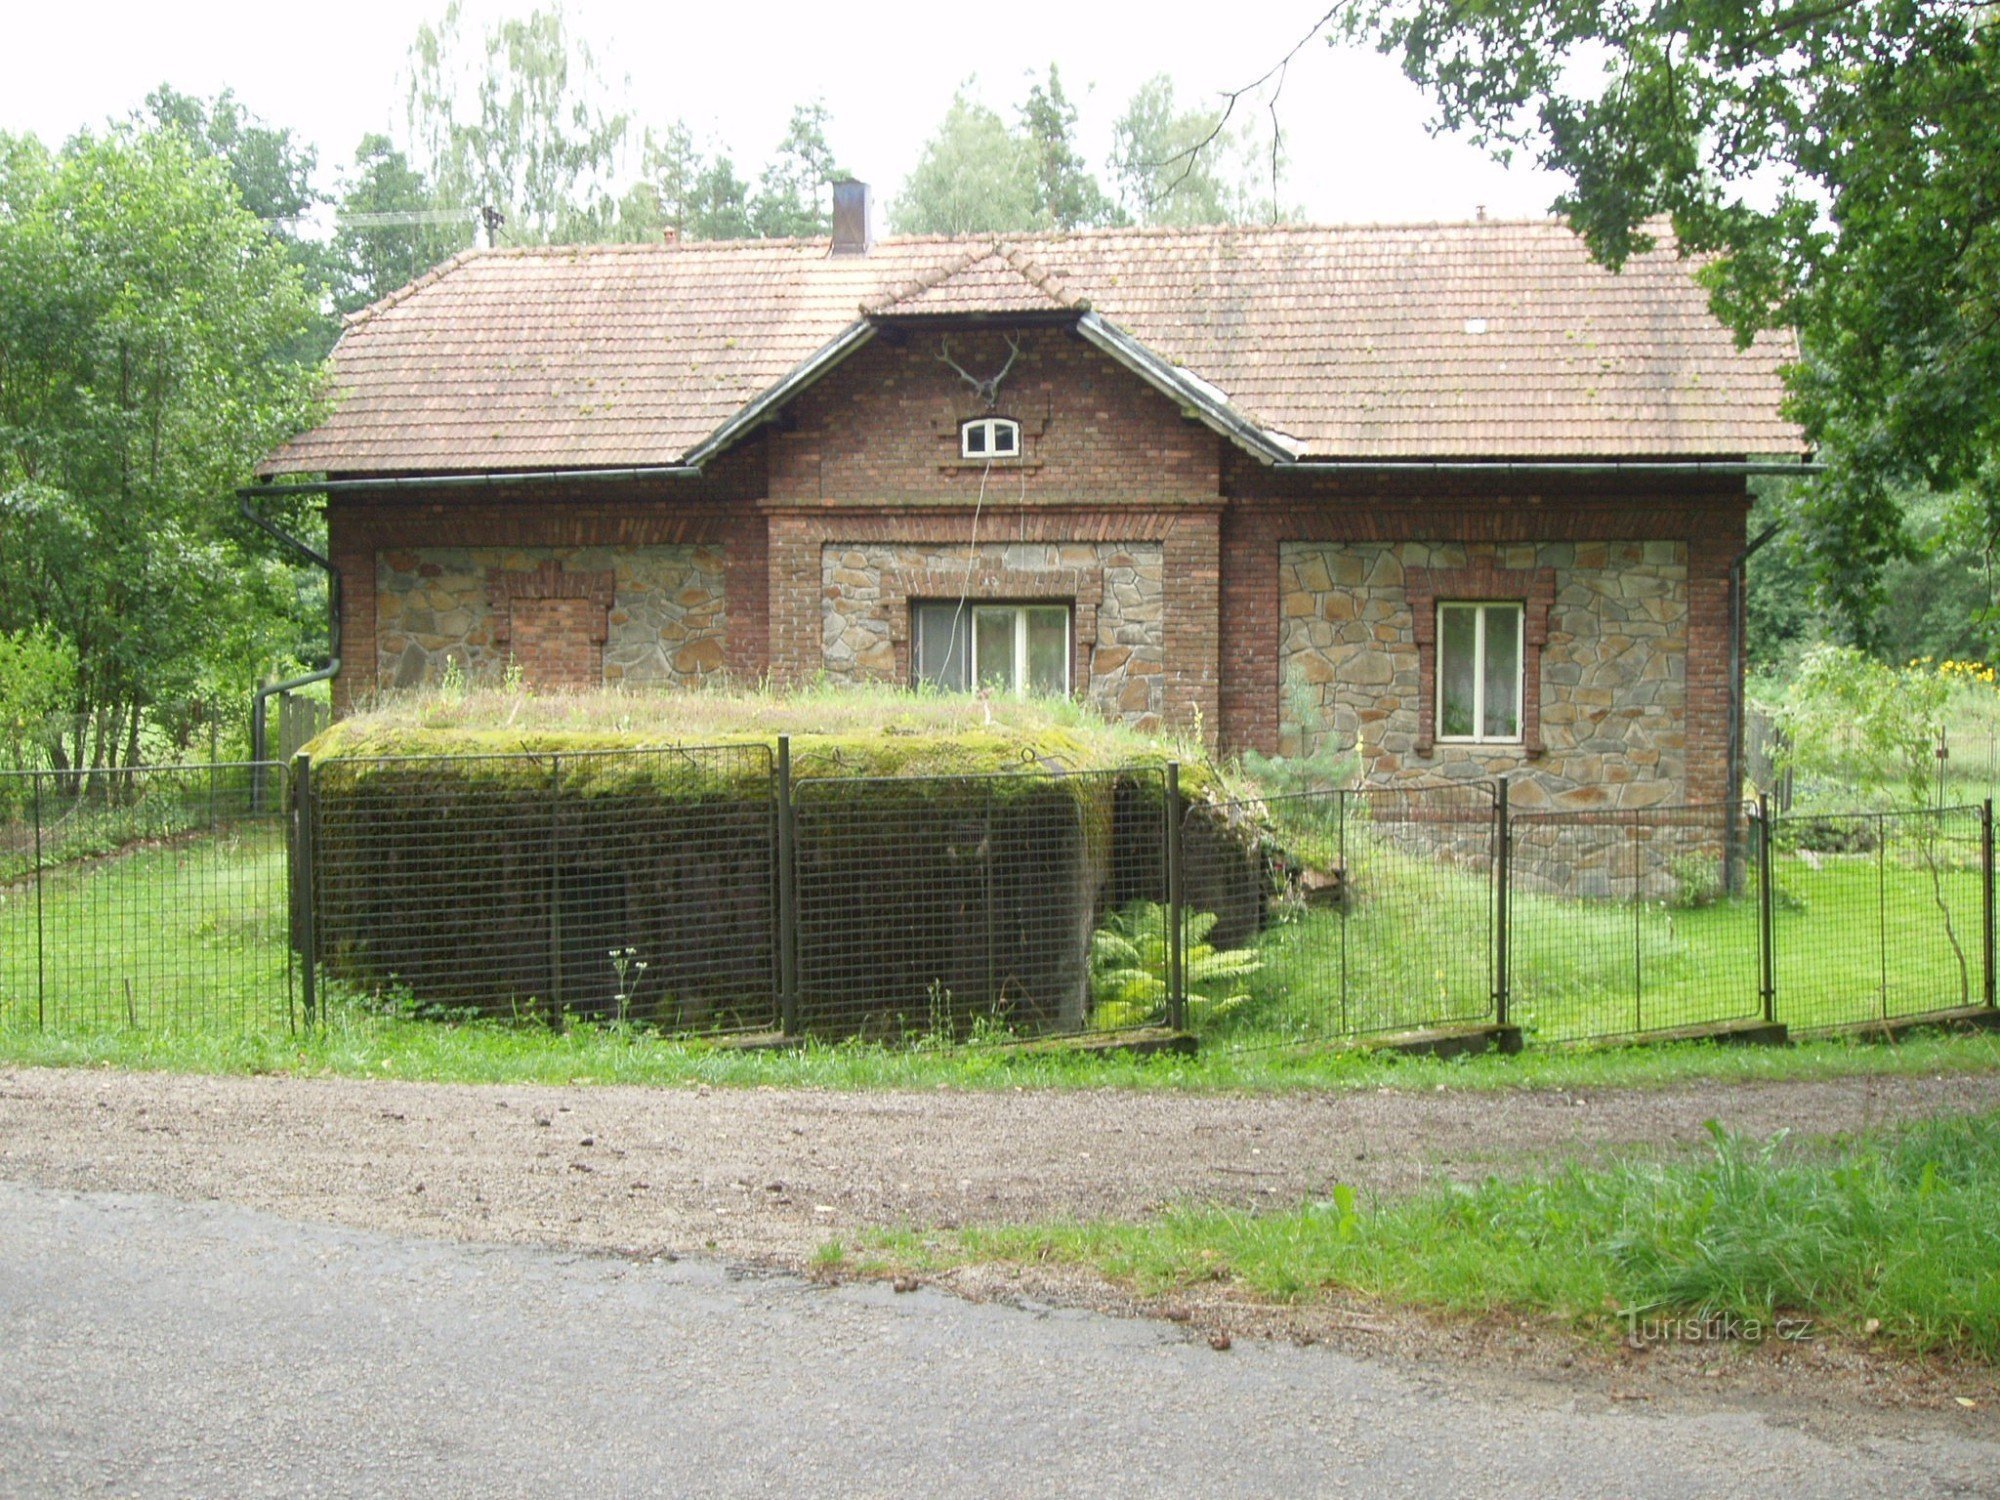 Leichte Befestigung "ŘOPÍK" im Garten des Wildgeheges in der Lokalität Purkrabí bei Chlum bei Třeboň